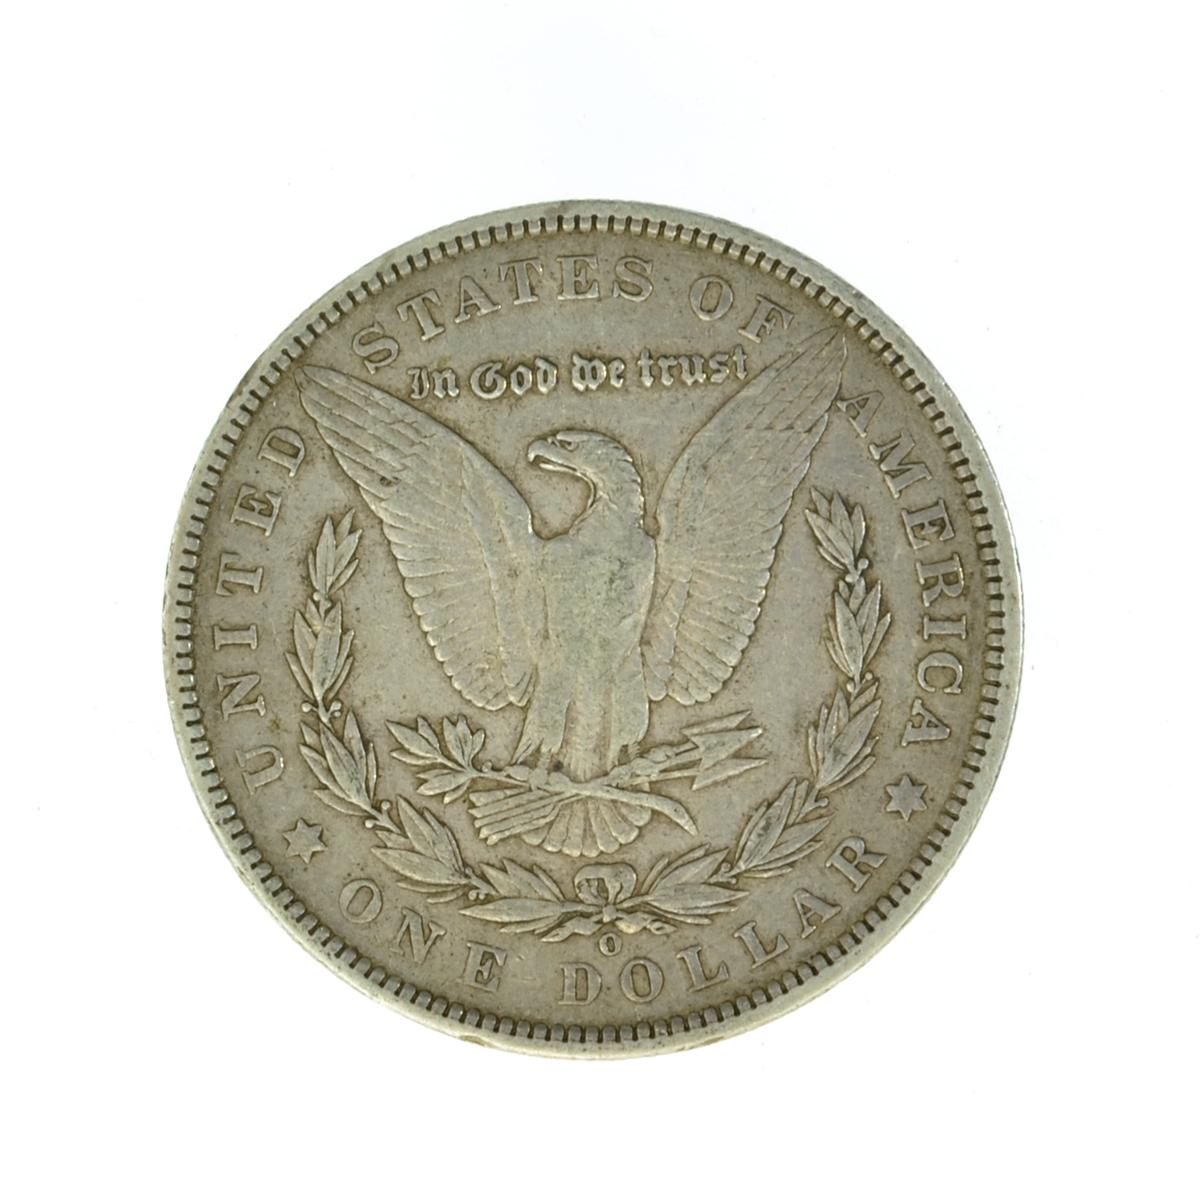 1904-O Silver Morgan Dollar Coin